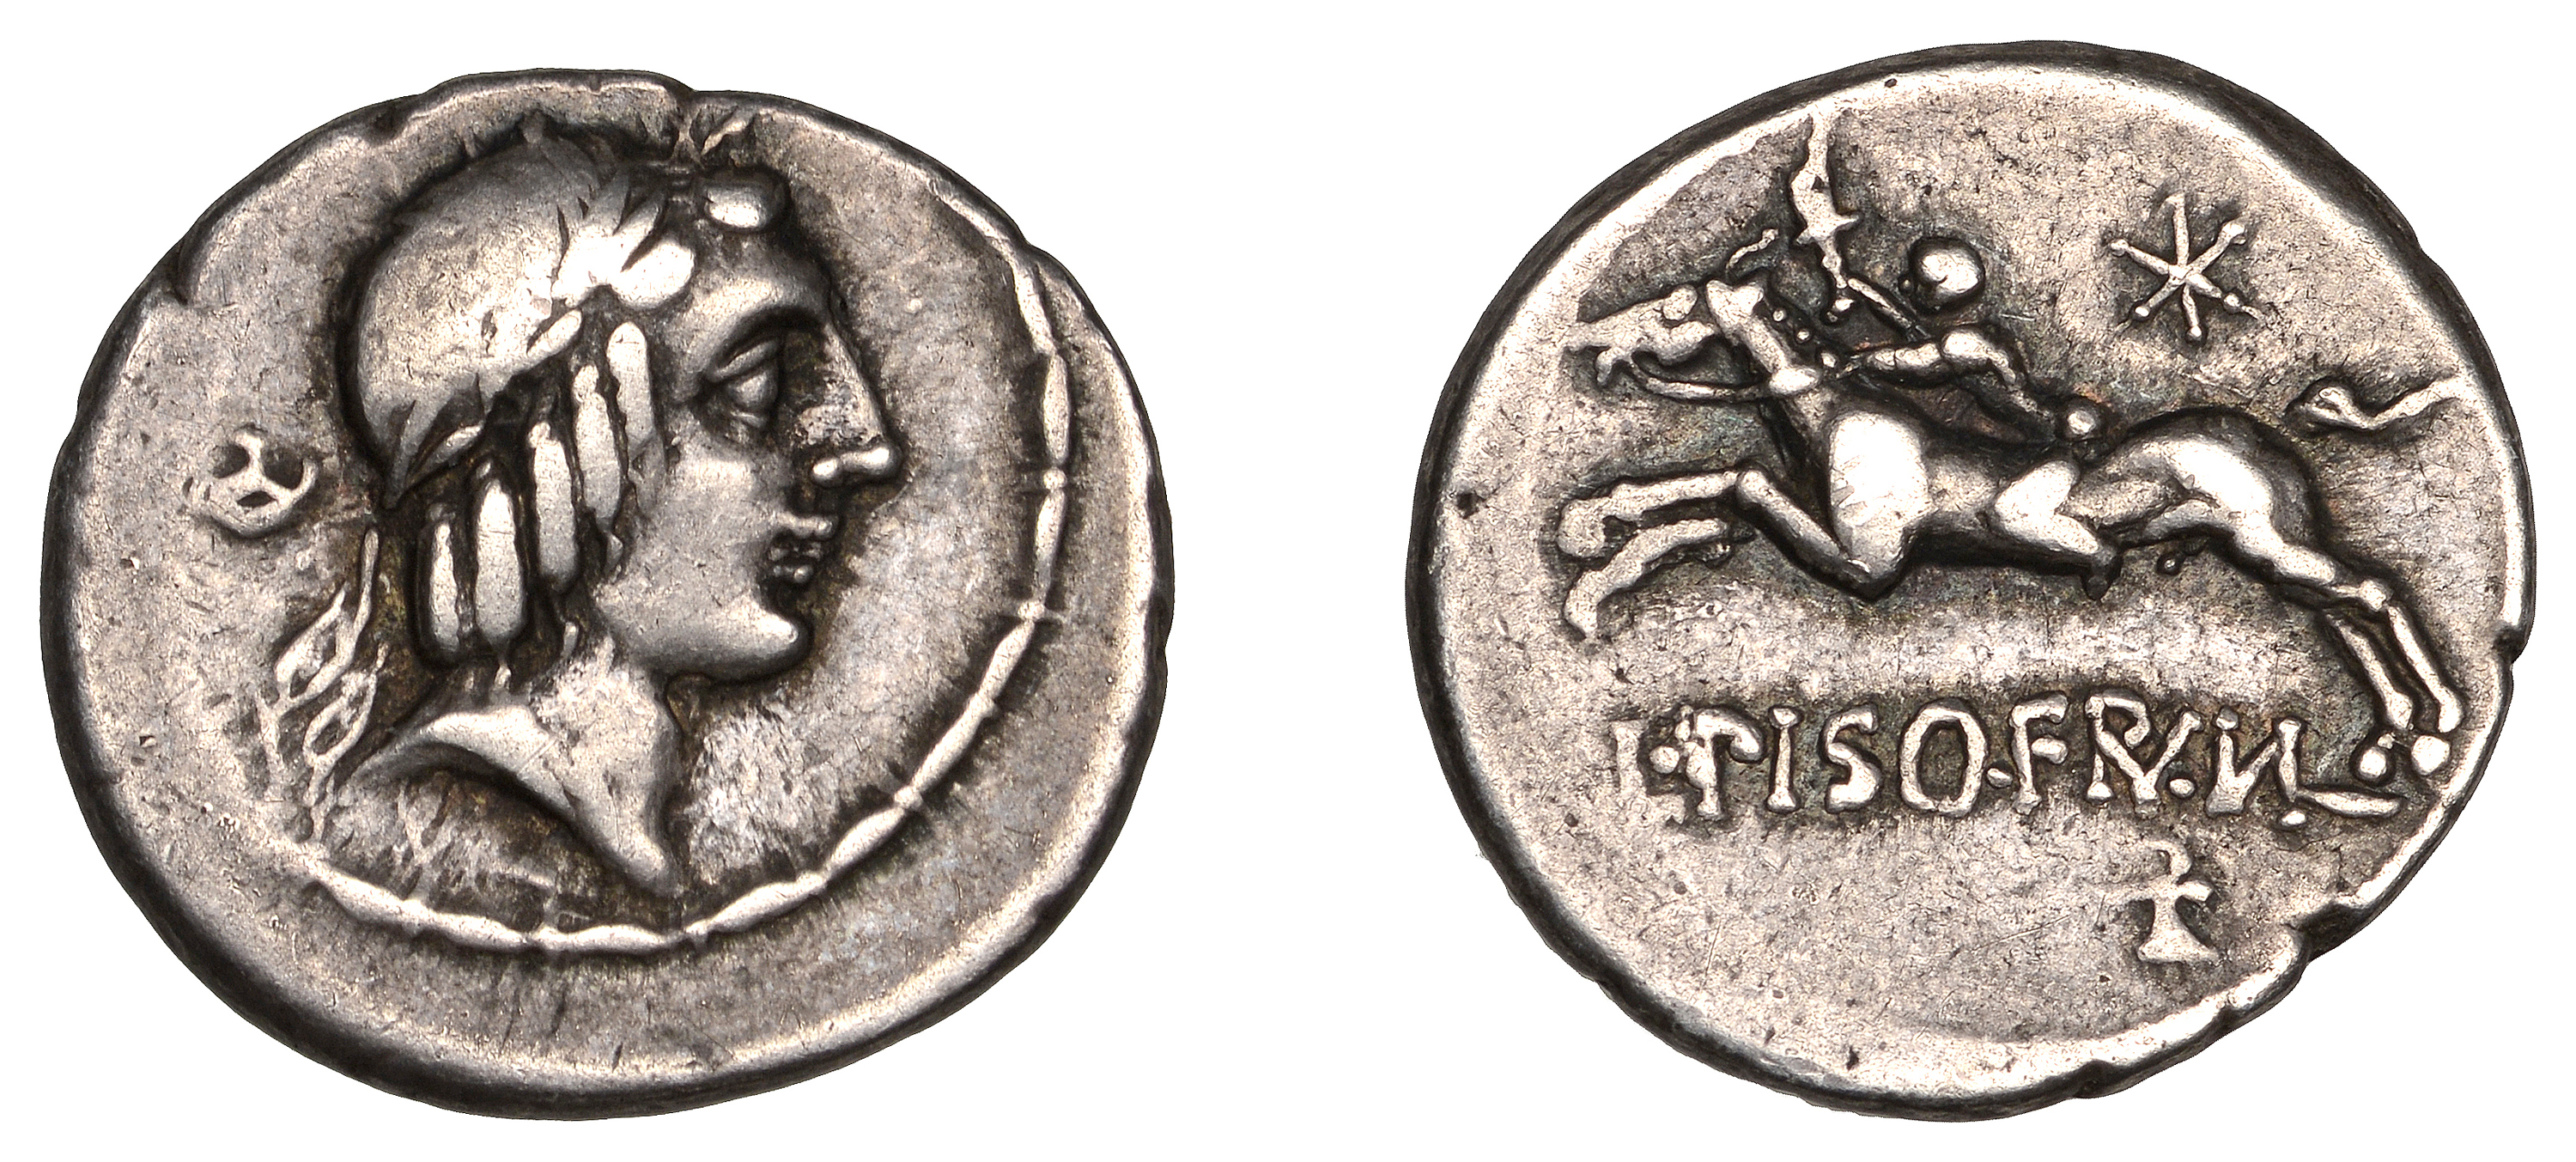 Roman Republican Coinage, L. Calpurnius Piso Frugi, Denarius, c. 90, laureate head of Apollo...